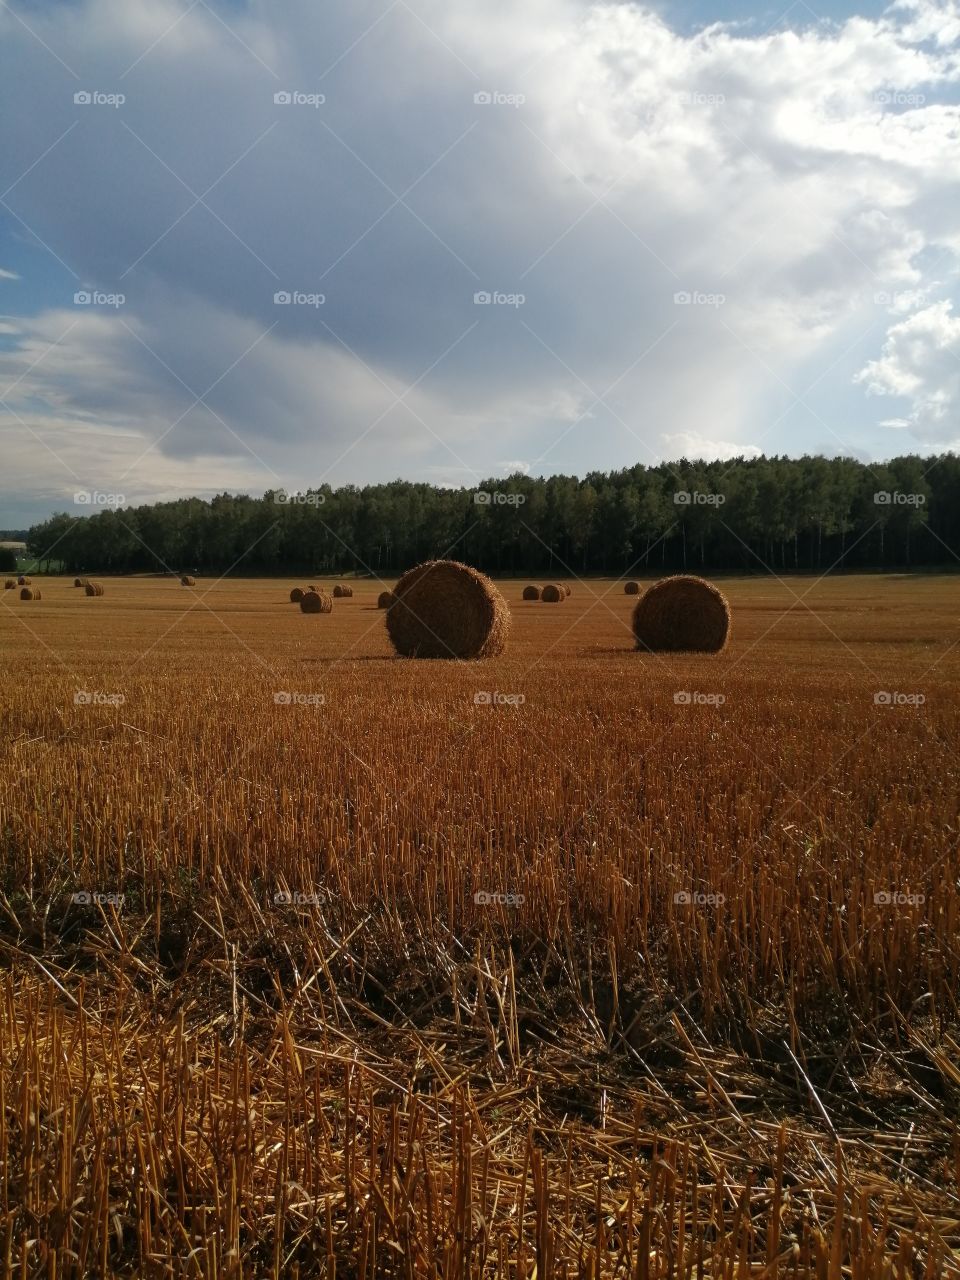 Field, nature, summer, Belarus,